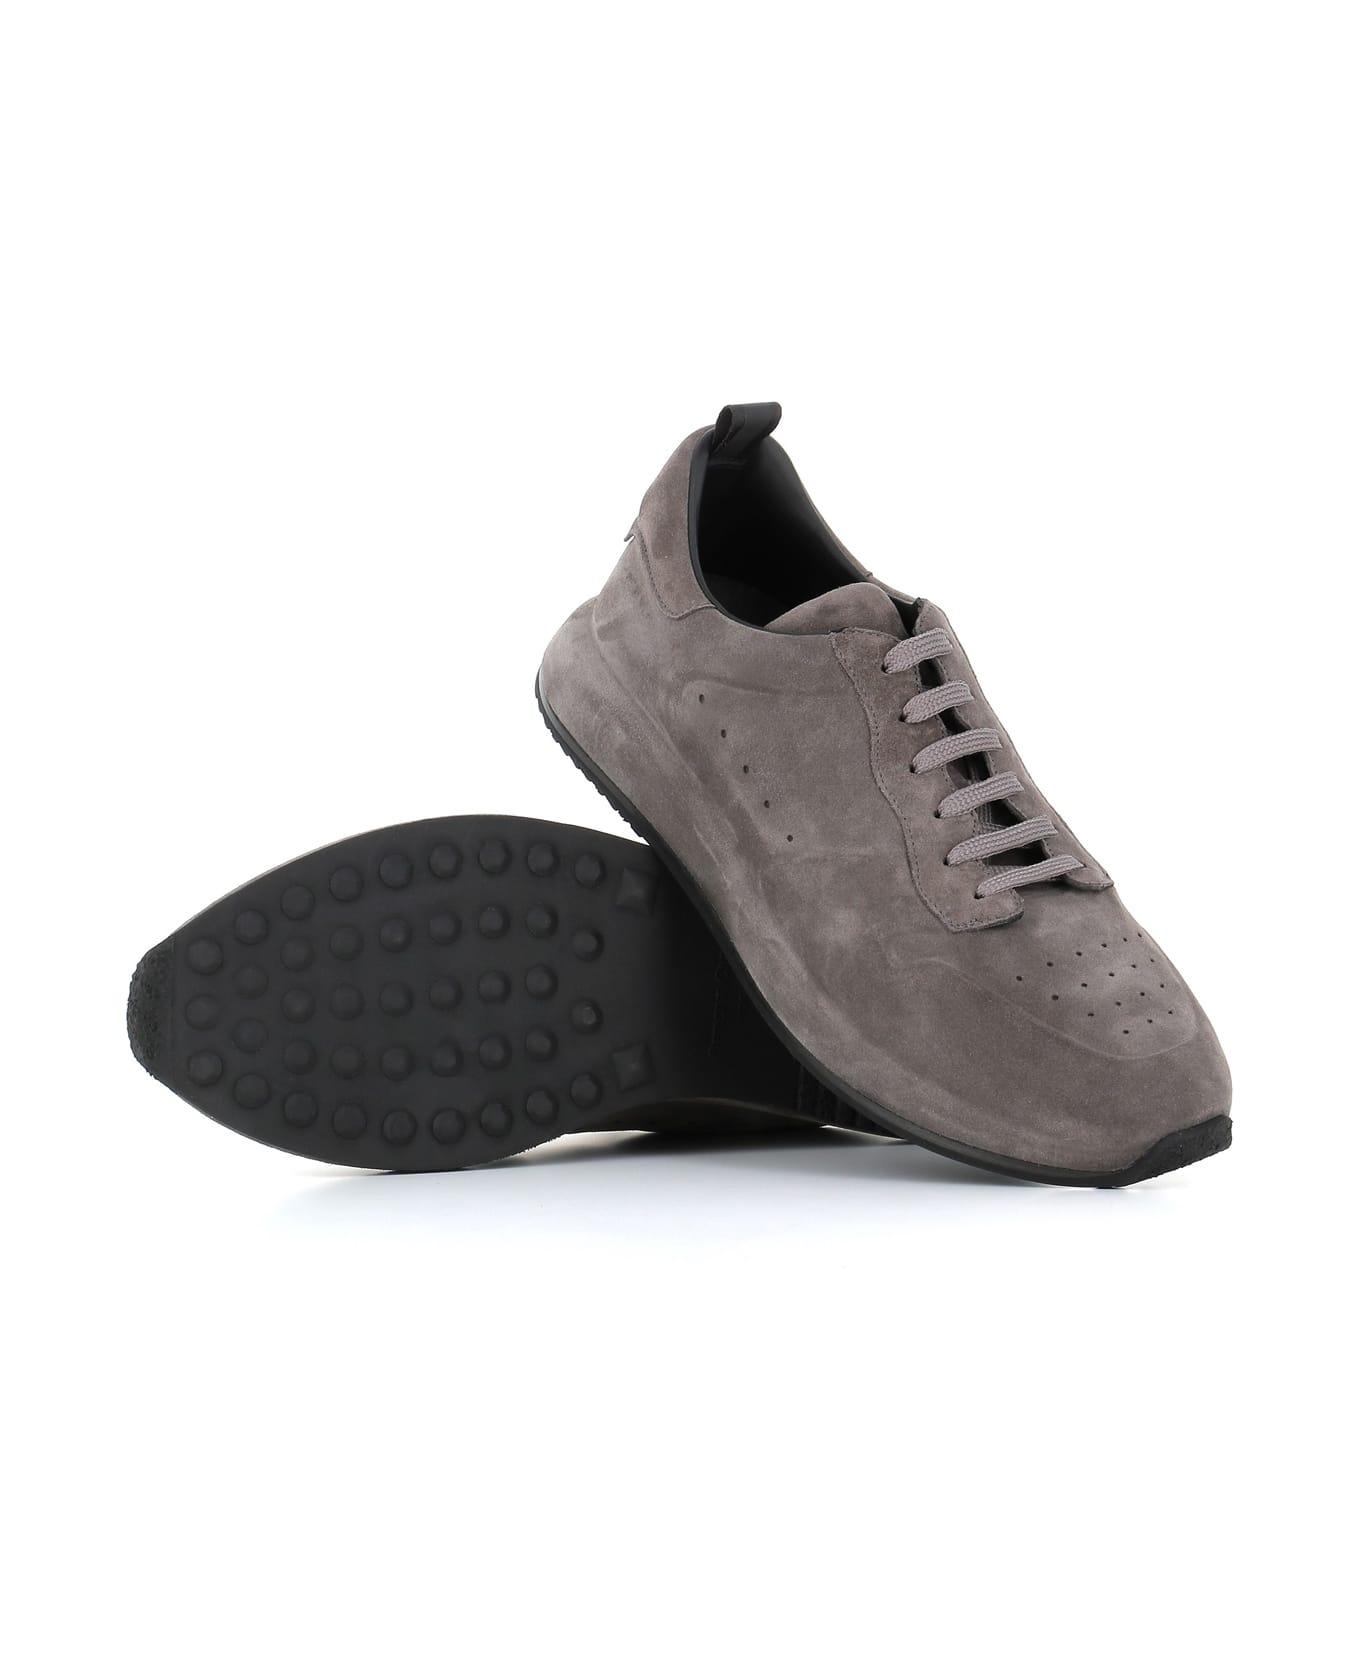 Officine Creative Sneaker Race Lux/003 - Dark grey スニーカー